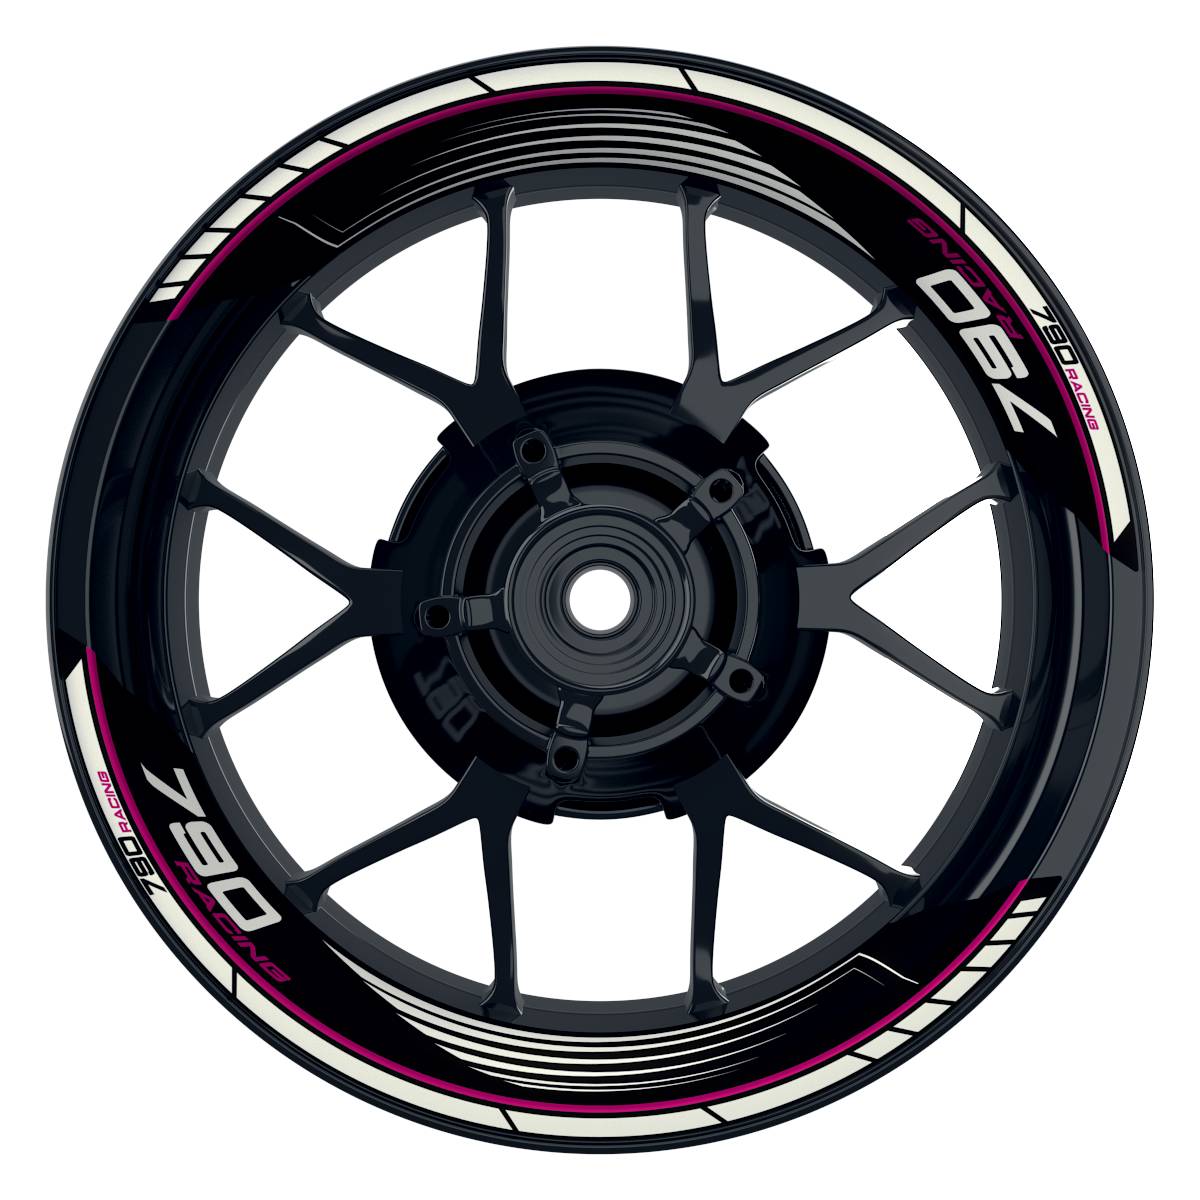 KTM Racing 790 SAW schwarz pink Frontansicht